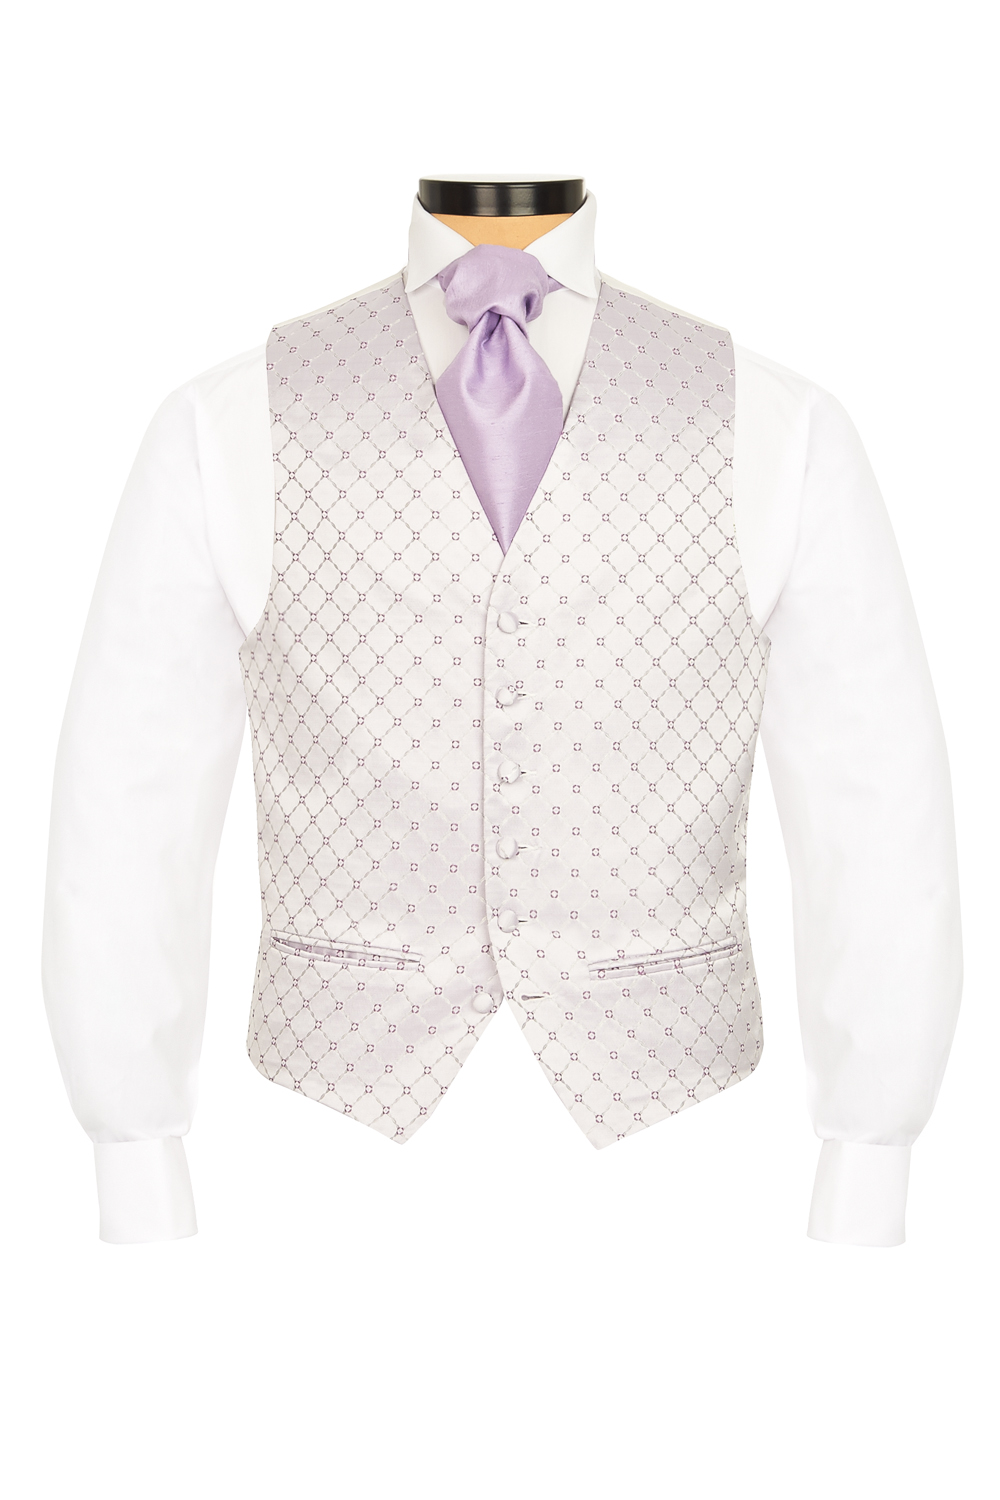 DQT Woven Floral Lilac Mens Wedding Waistcoat & Cravat Set S-5XL 